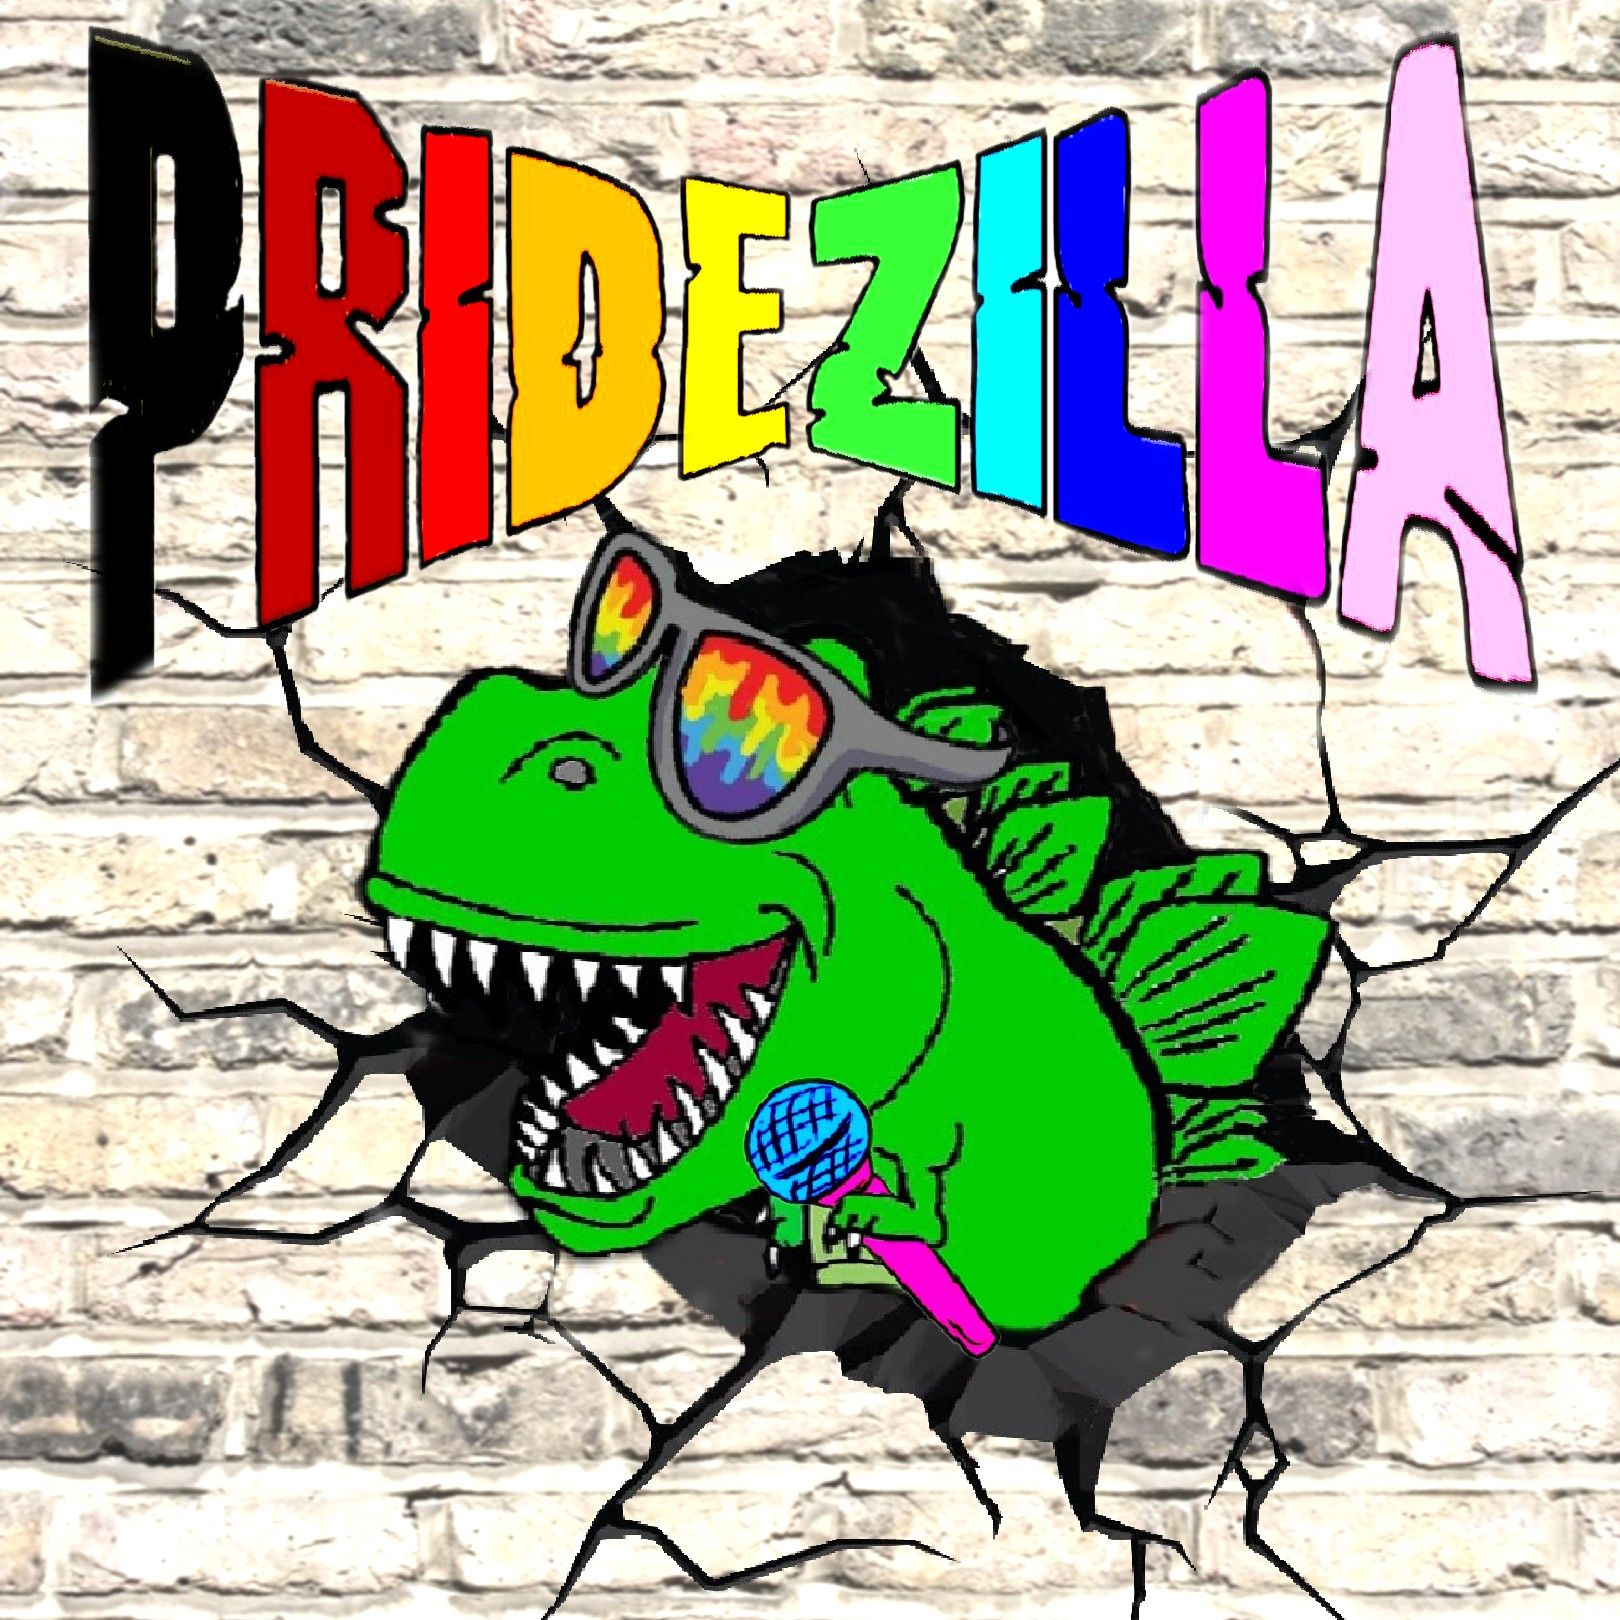 Pridezilla